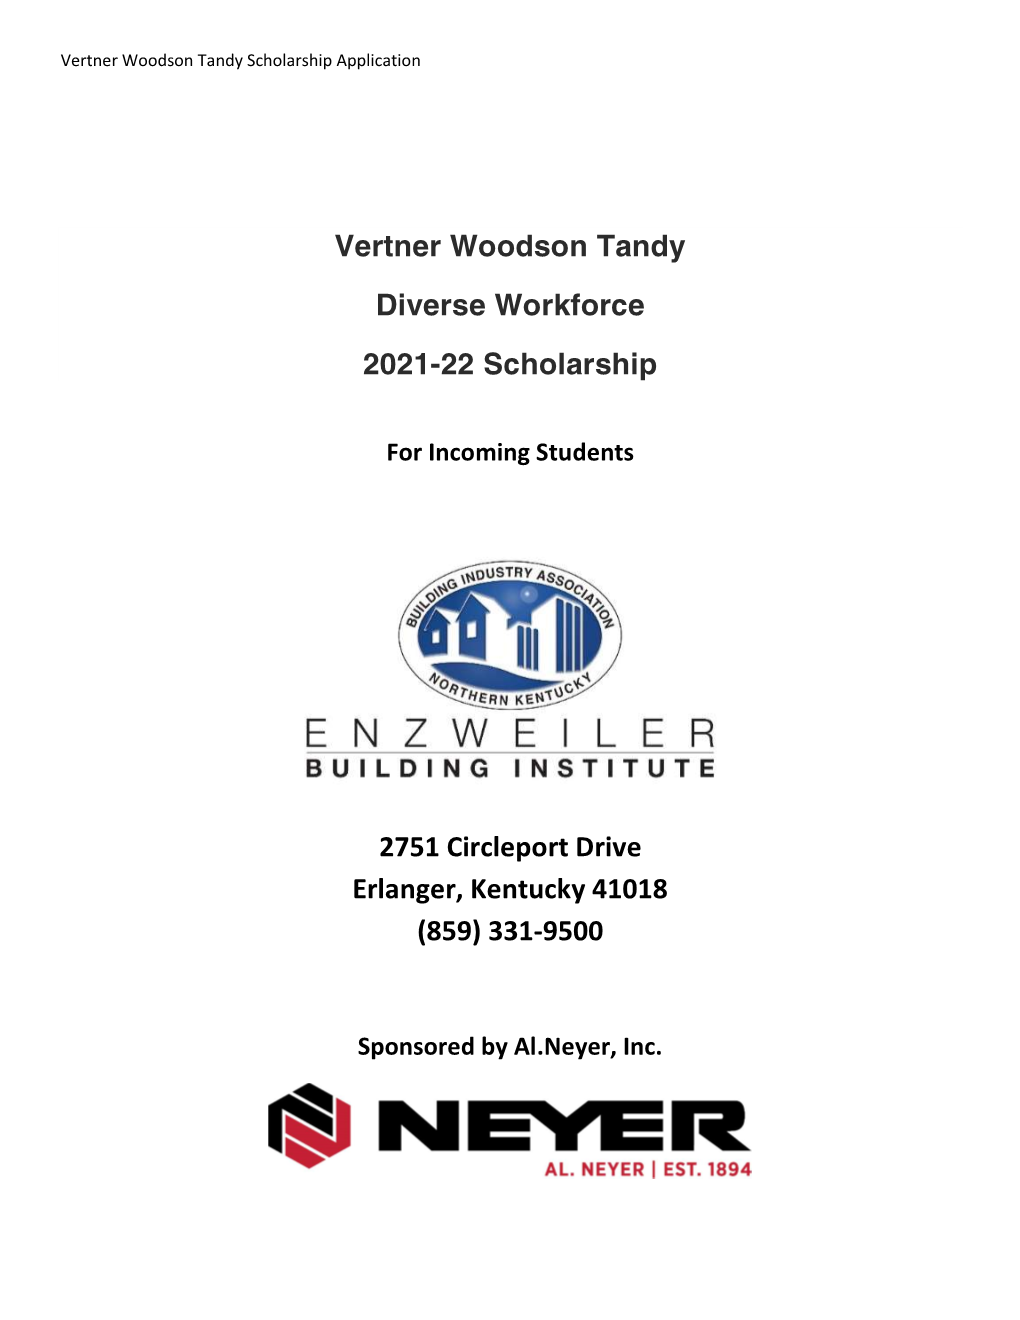 Vertner Woodson Tandy Diverse Workforce 2021-22 Scholarship